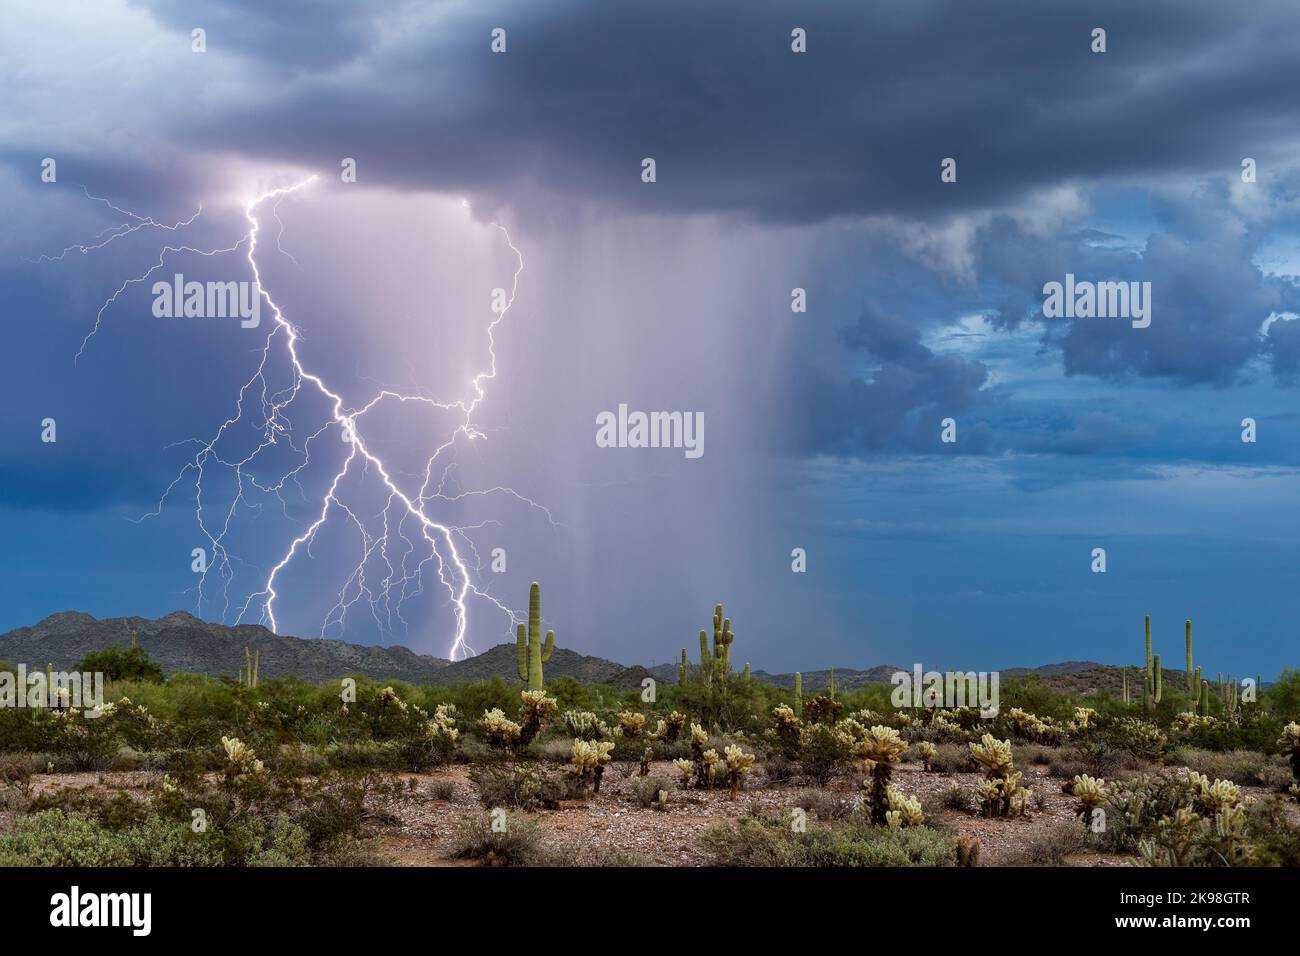 Tormenta monzónica con relámpagos en el desierto de Arizona Foto de stock